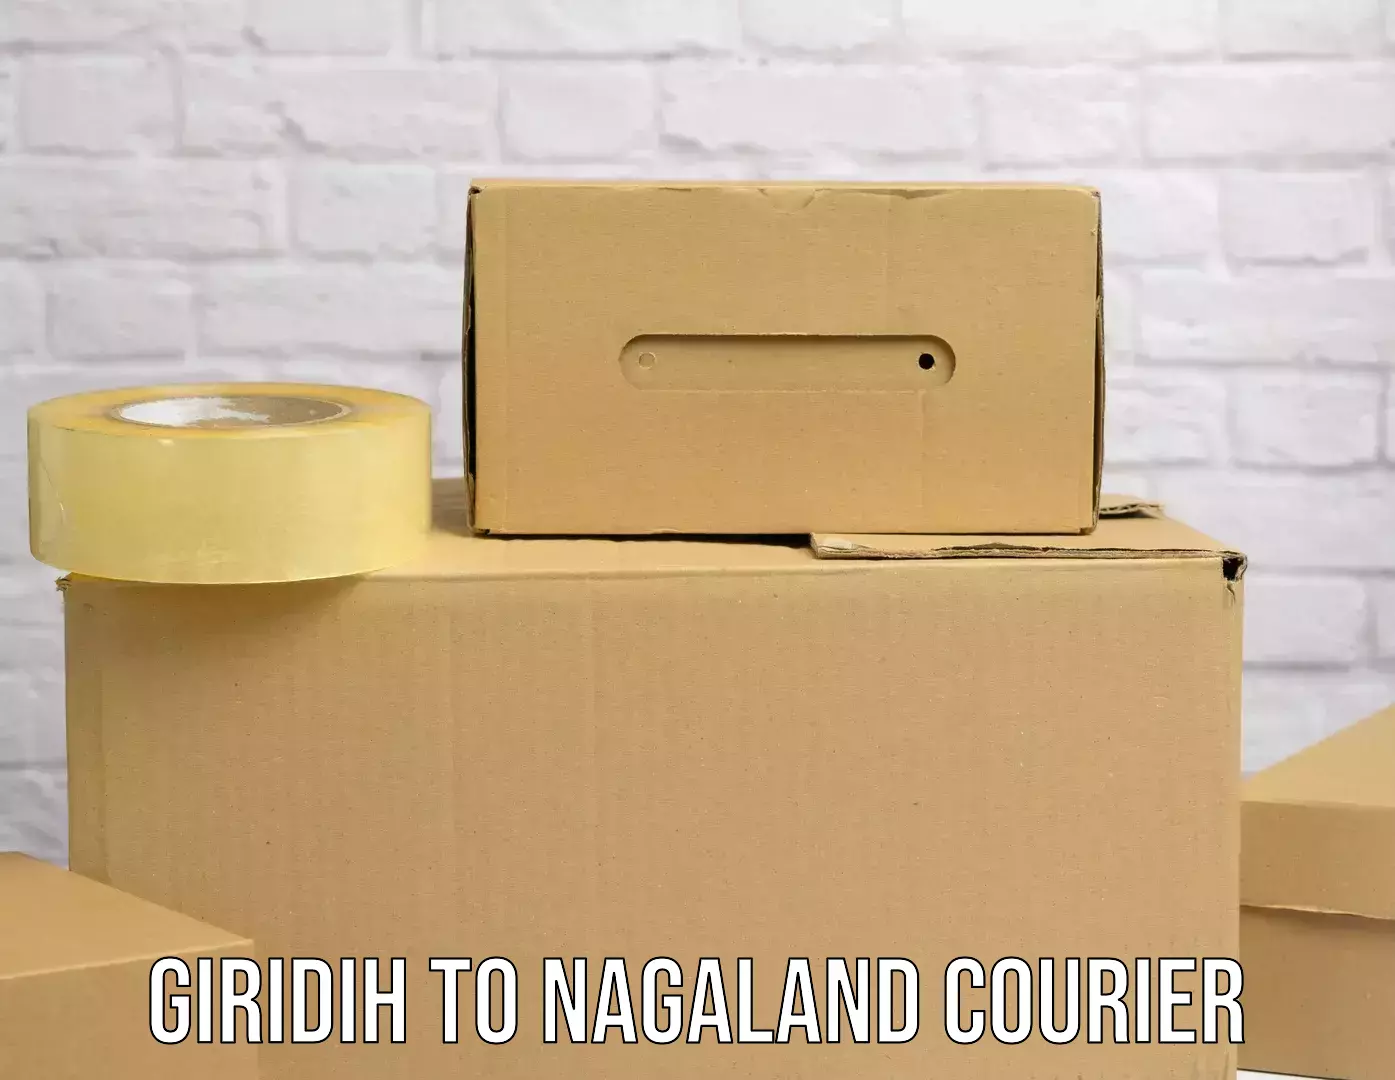 Door-to-door freight service Giridih to Nagaland